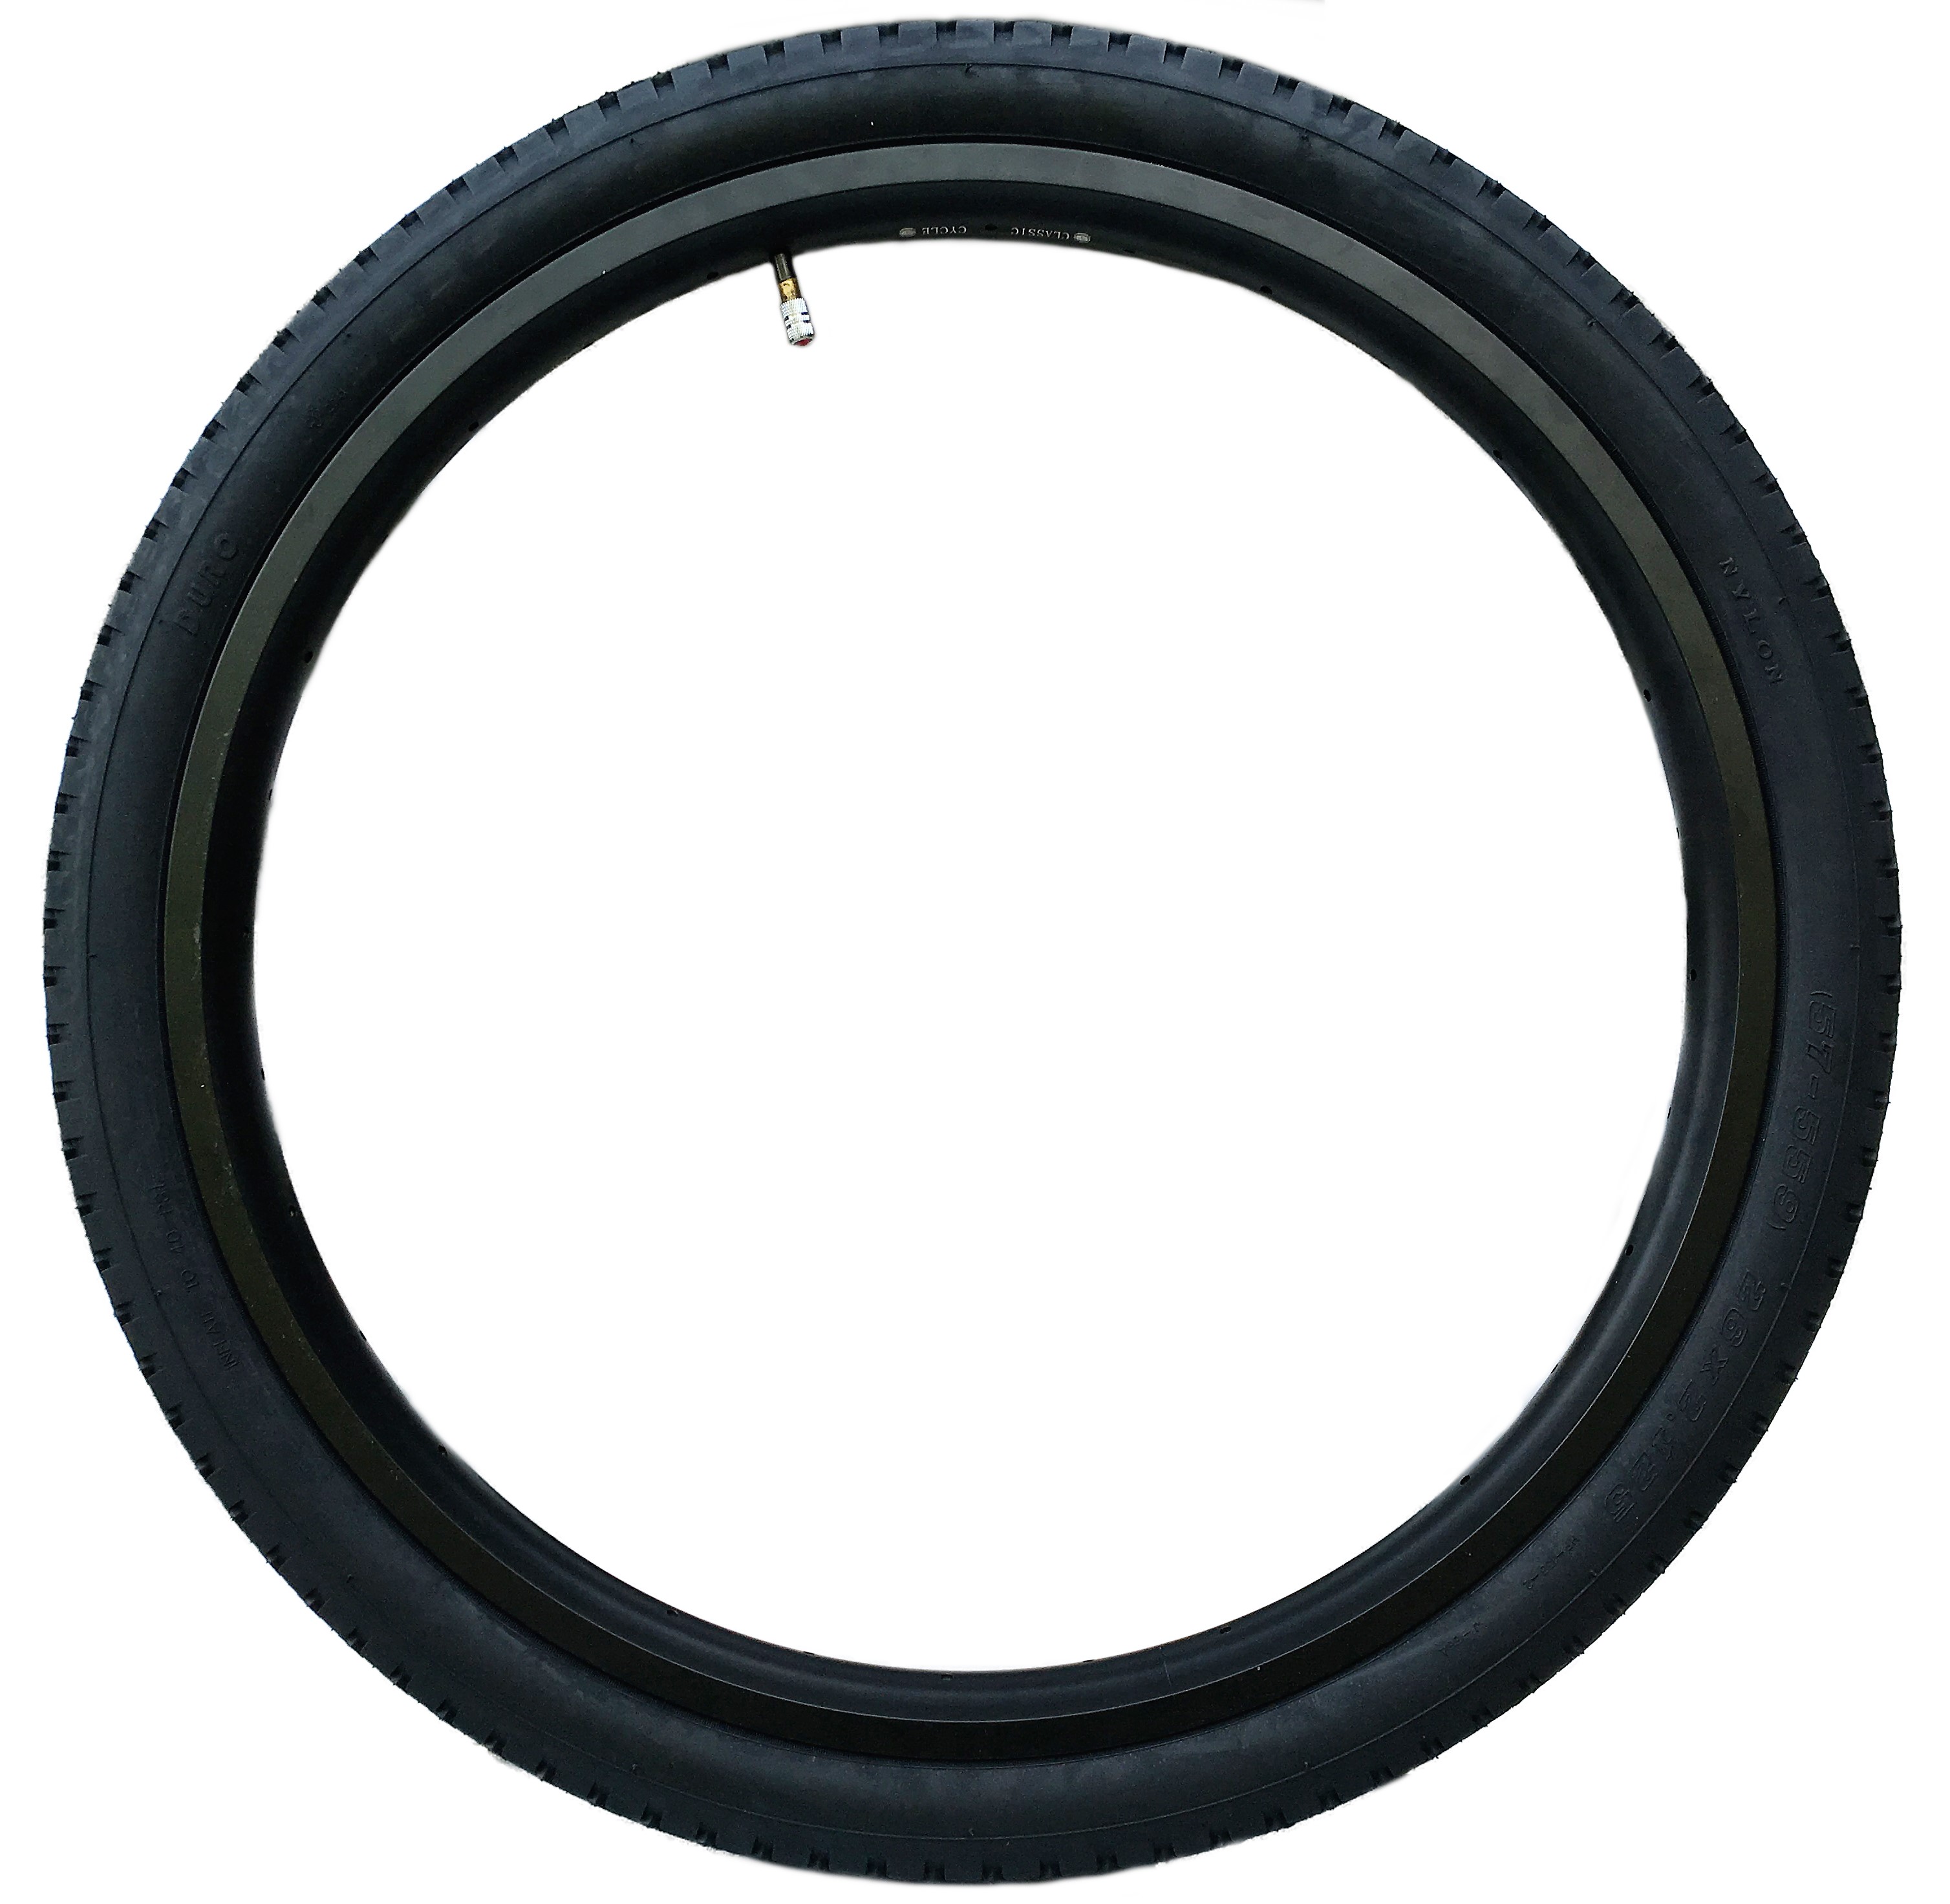 Neumáticos tipo balón Streetking 26 x 2.125, completamente en negro